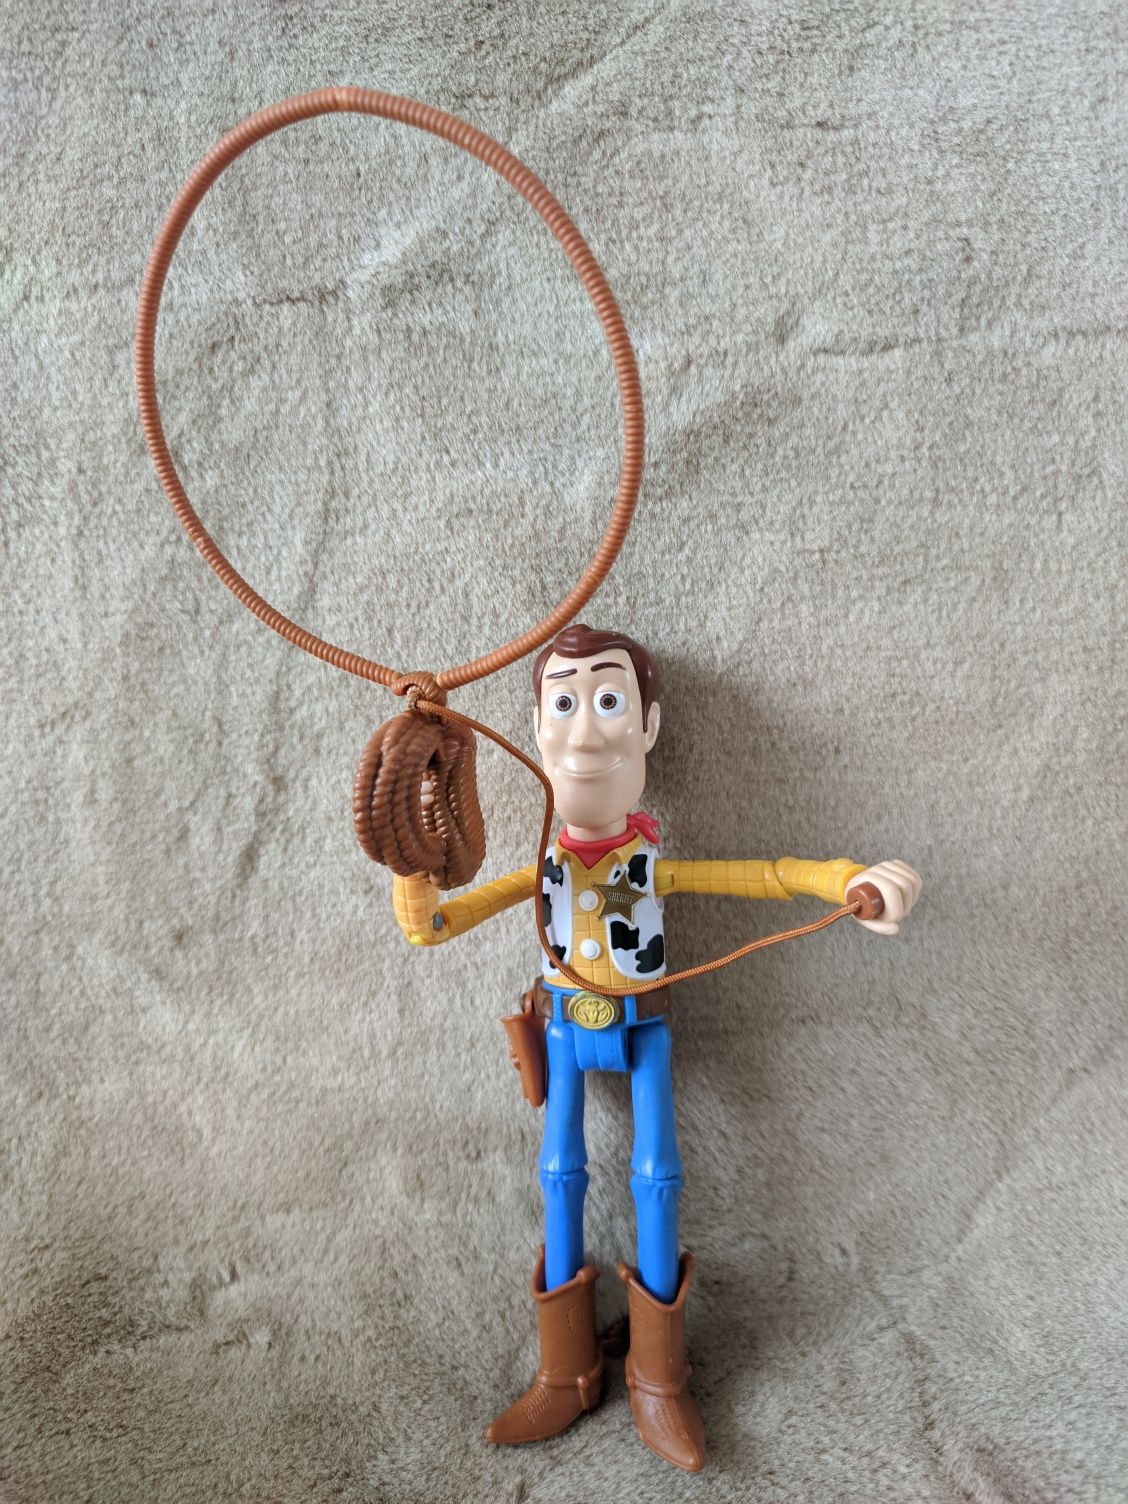 Ковбой Вуди с лассо История Игрушек Toy story Disney Pixar 25 см